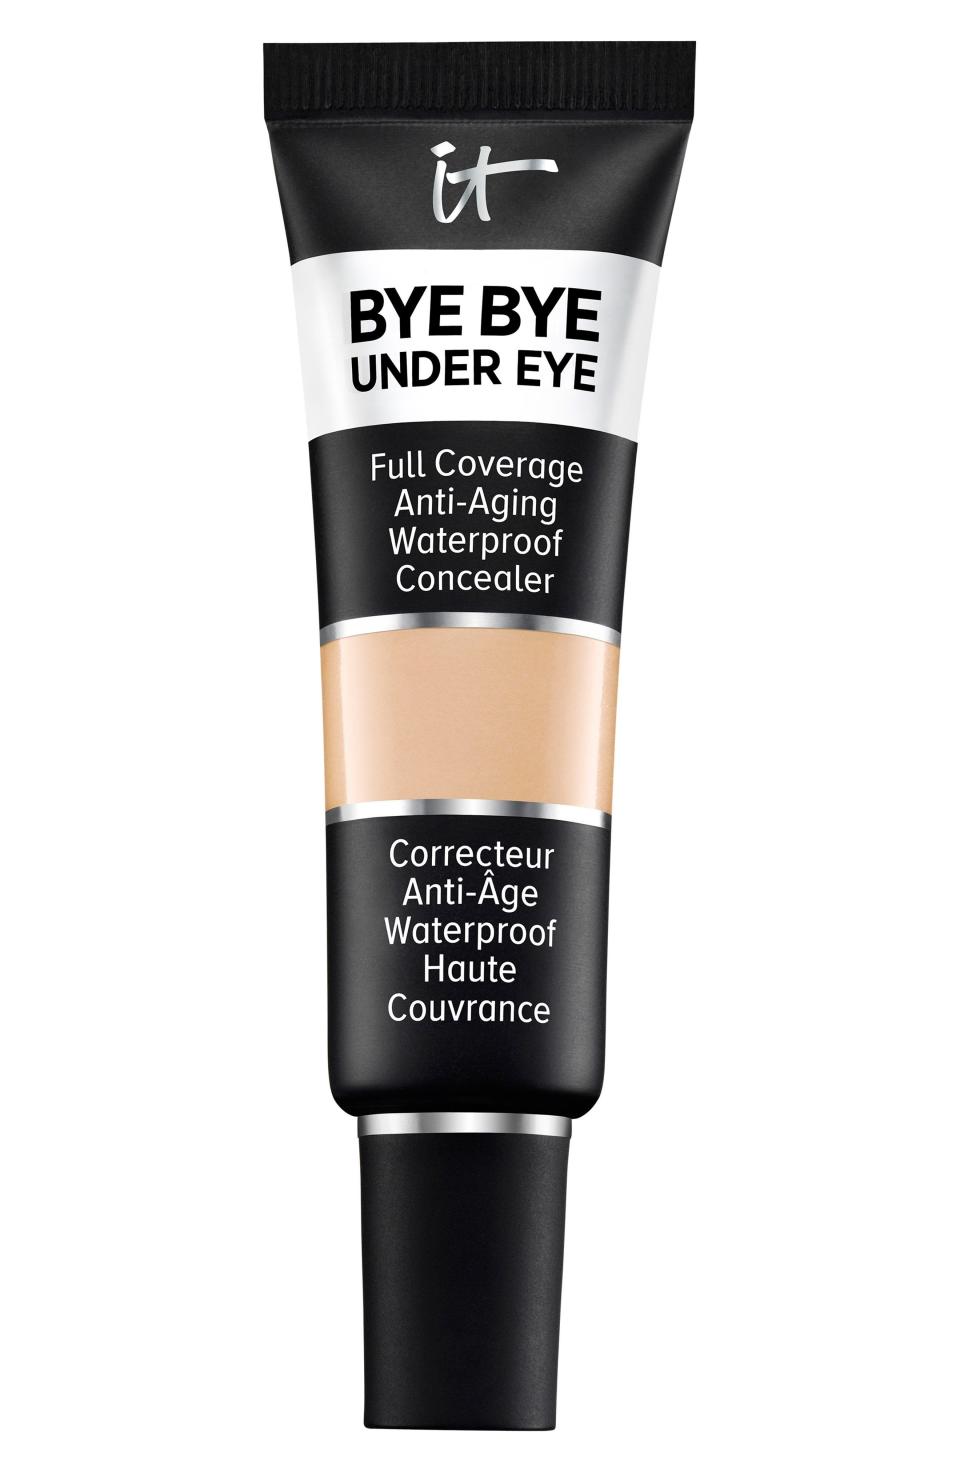 3) Bye Bye Under Eye Anti-Aging Waterproof Concealer